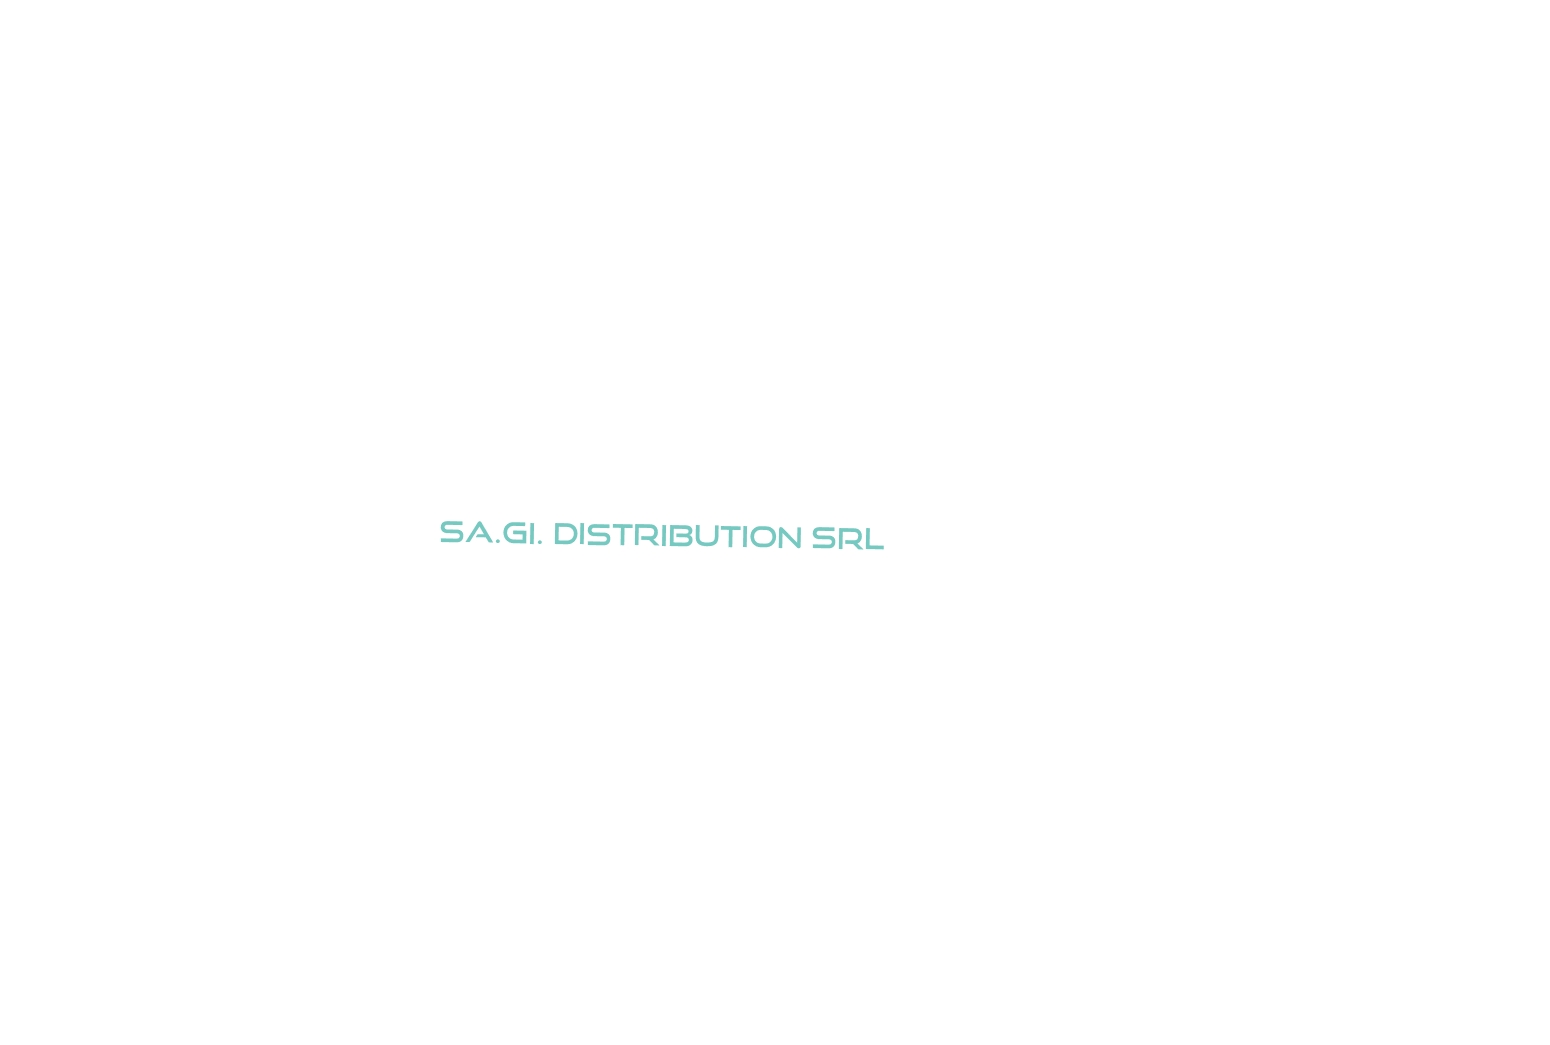 logo Sa.Gi. Distribution Srl